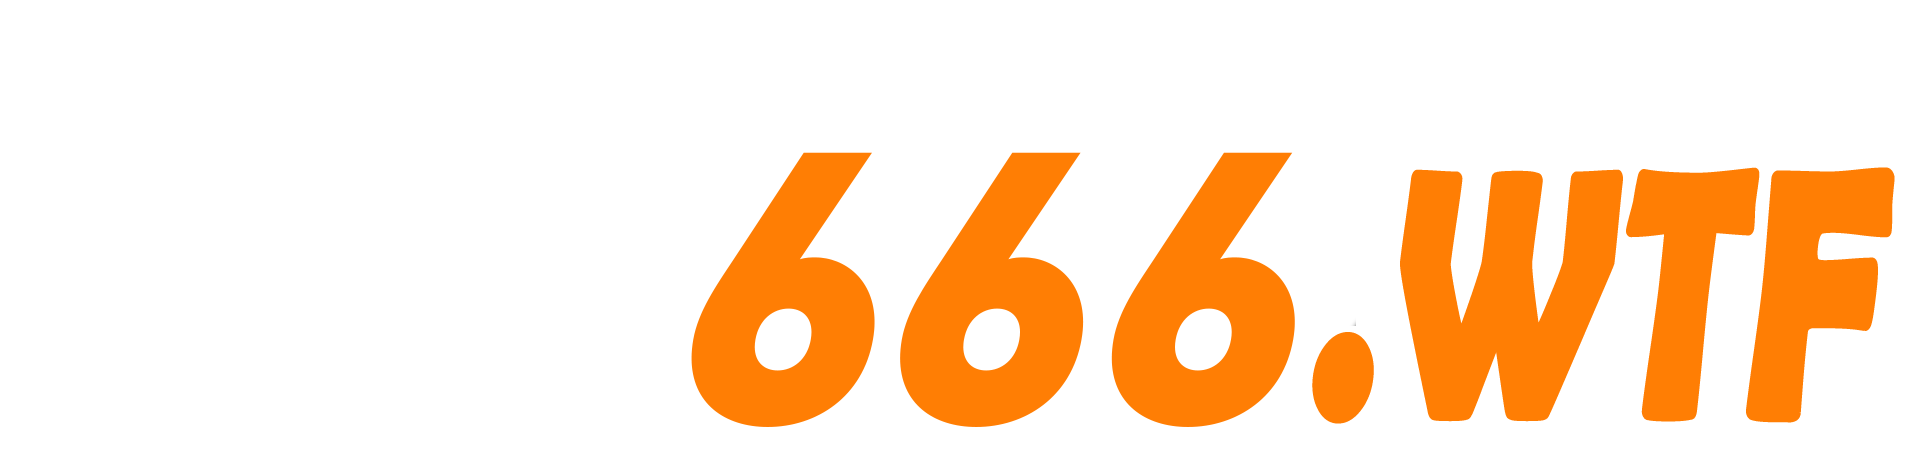 S666 - S666.WTF - TRANG CHỦ ĐĂNG KÝ CHÍNH THỨC KM 88K